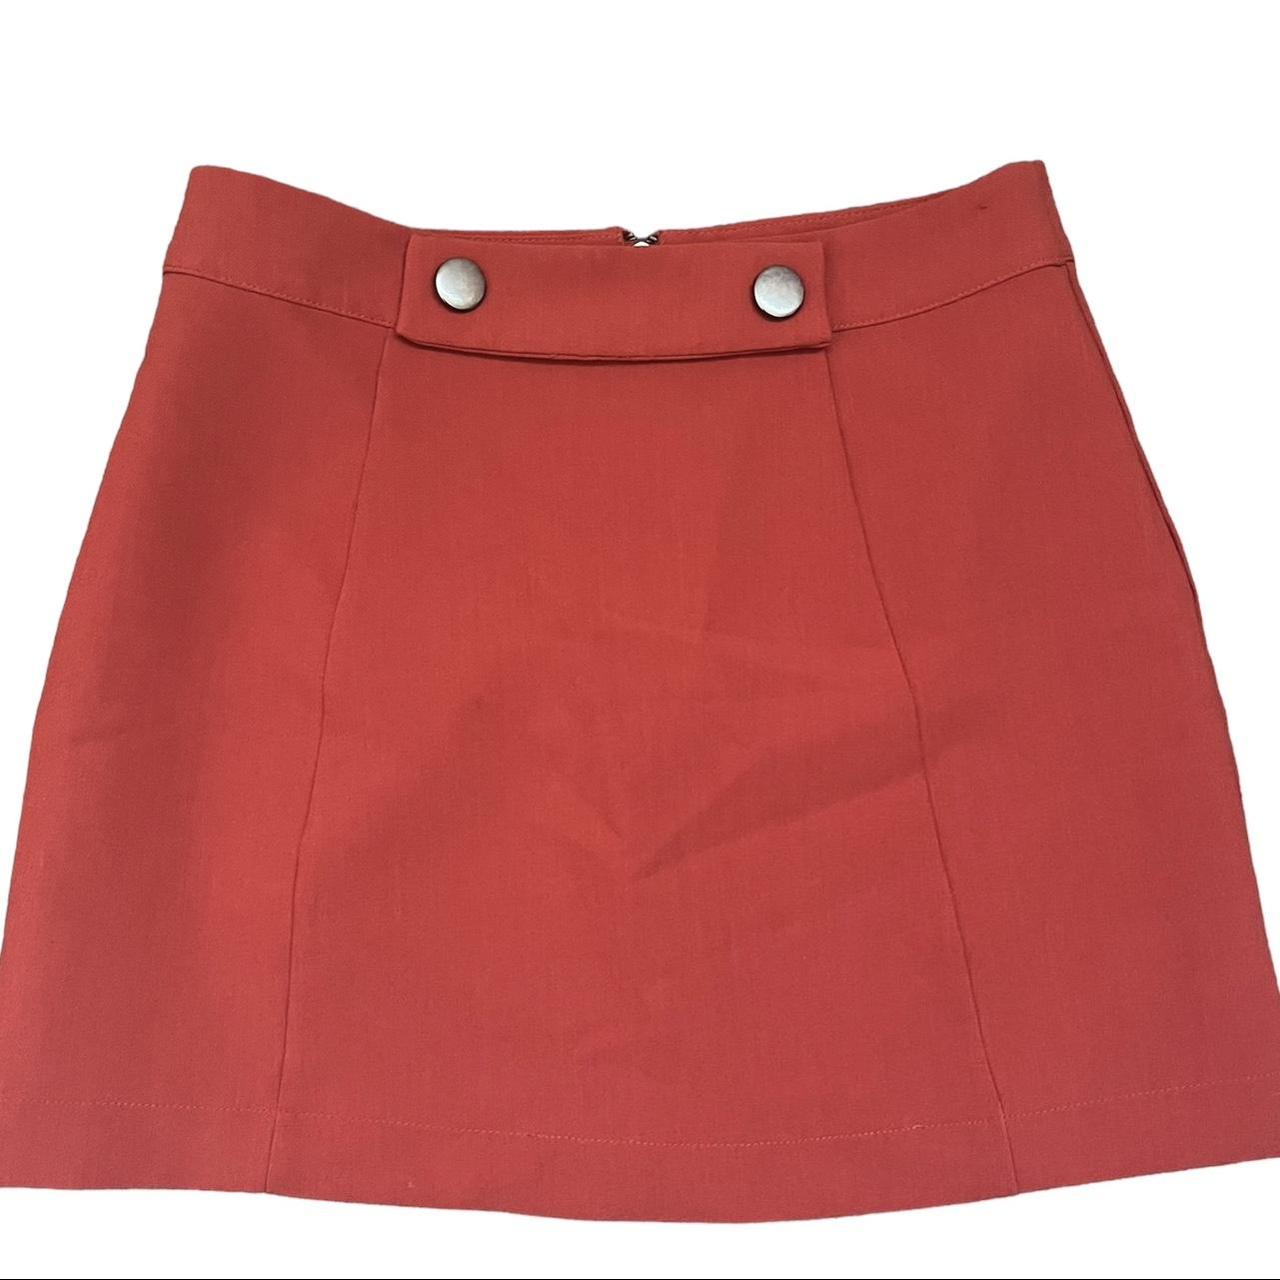 Forever 21 skirt. Size: Small Zipper on the back... - Depop